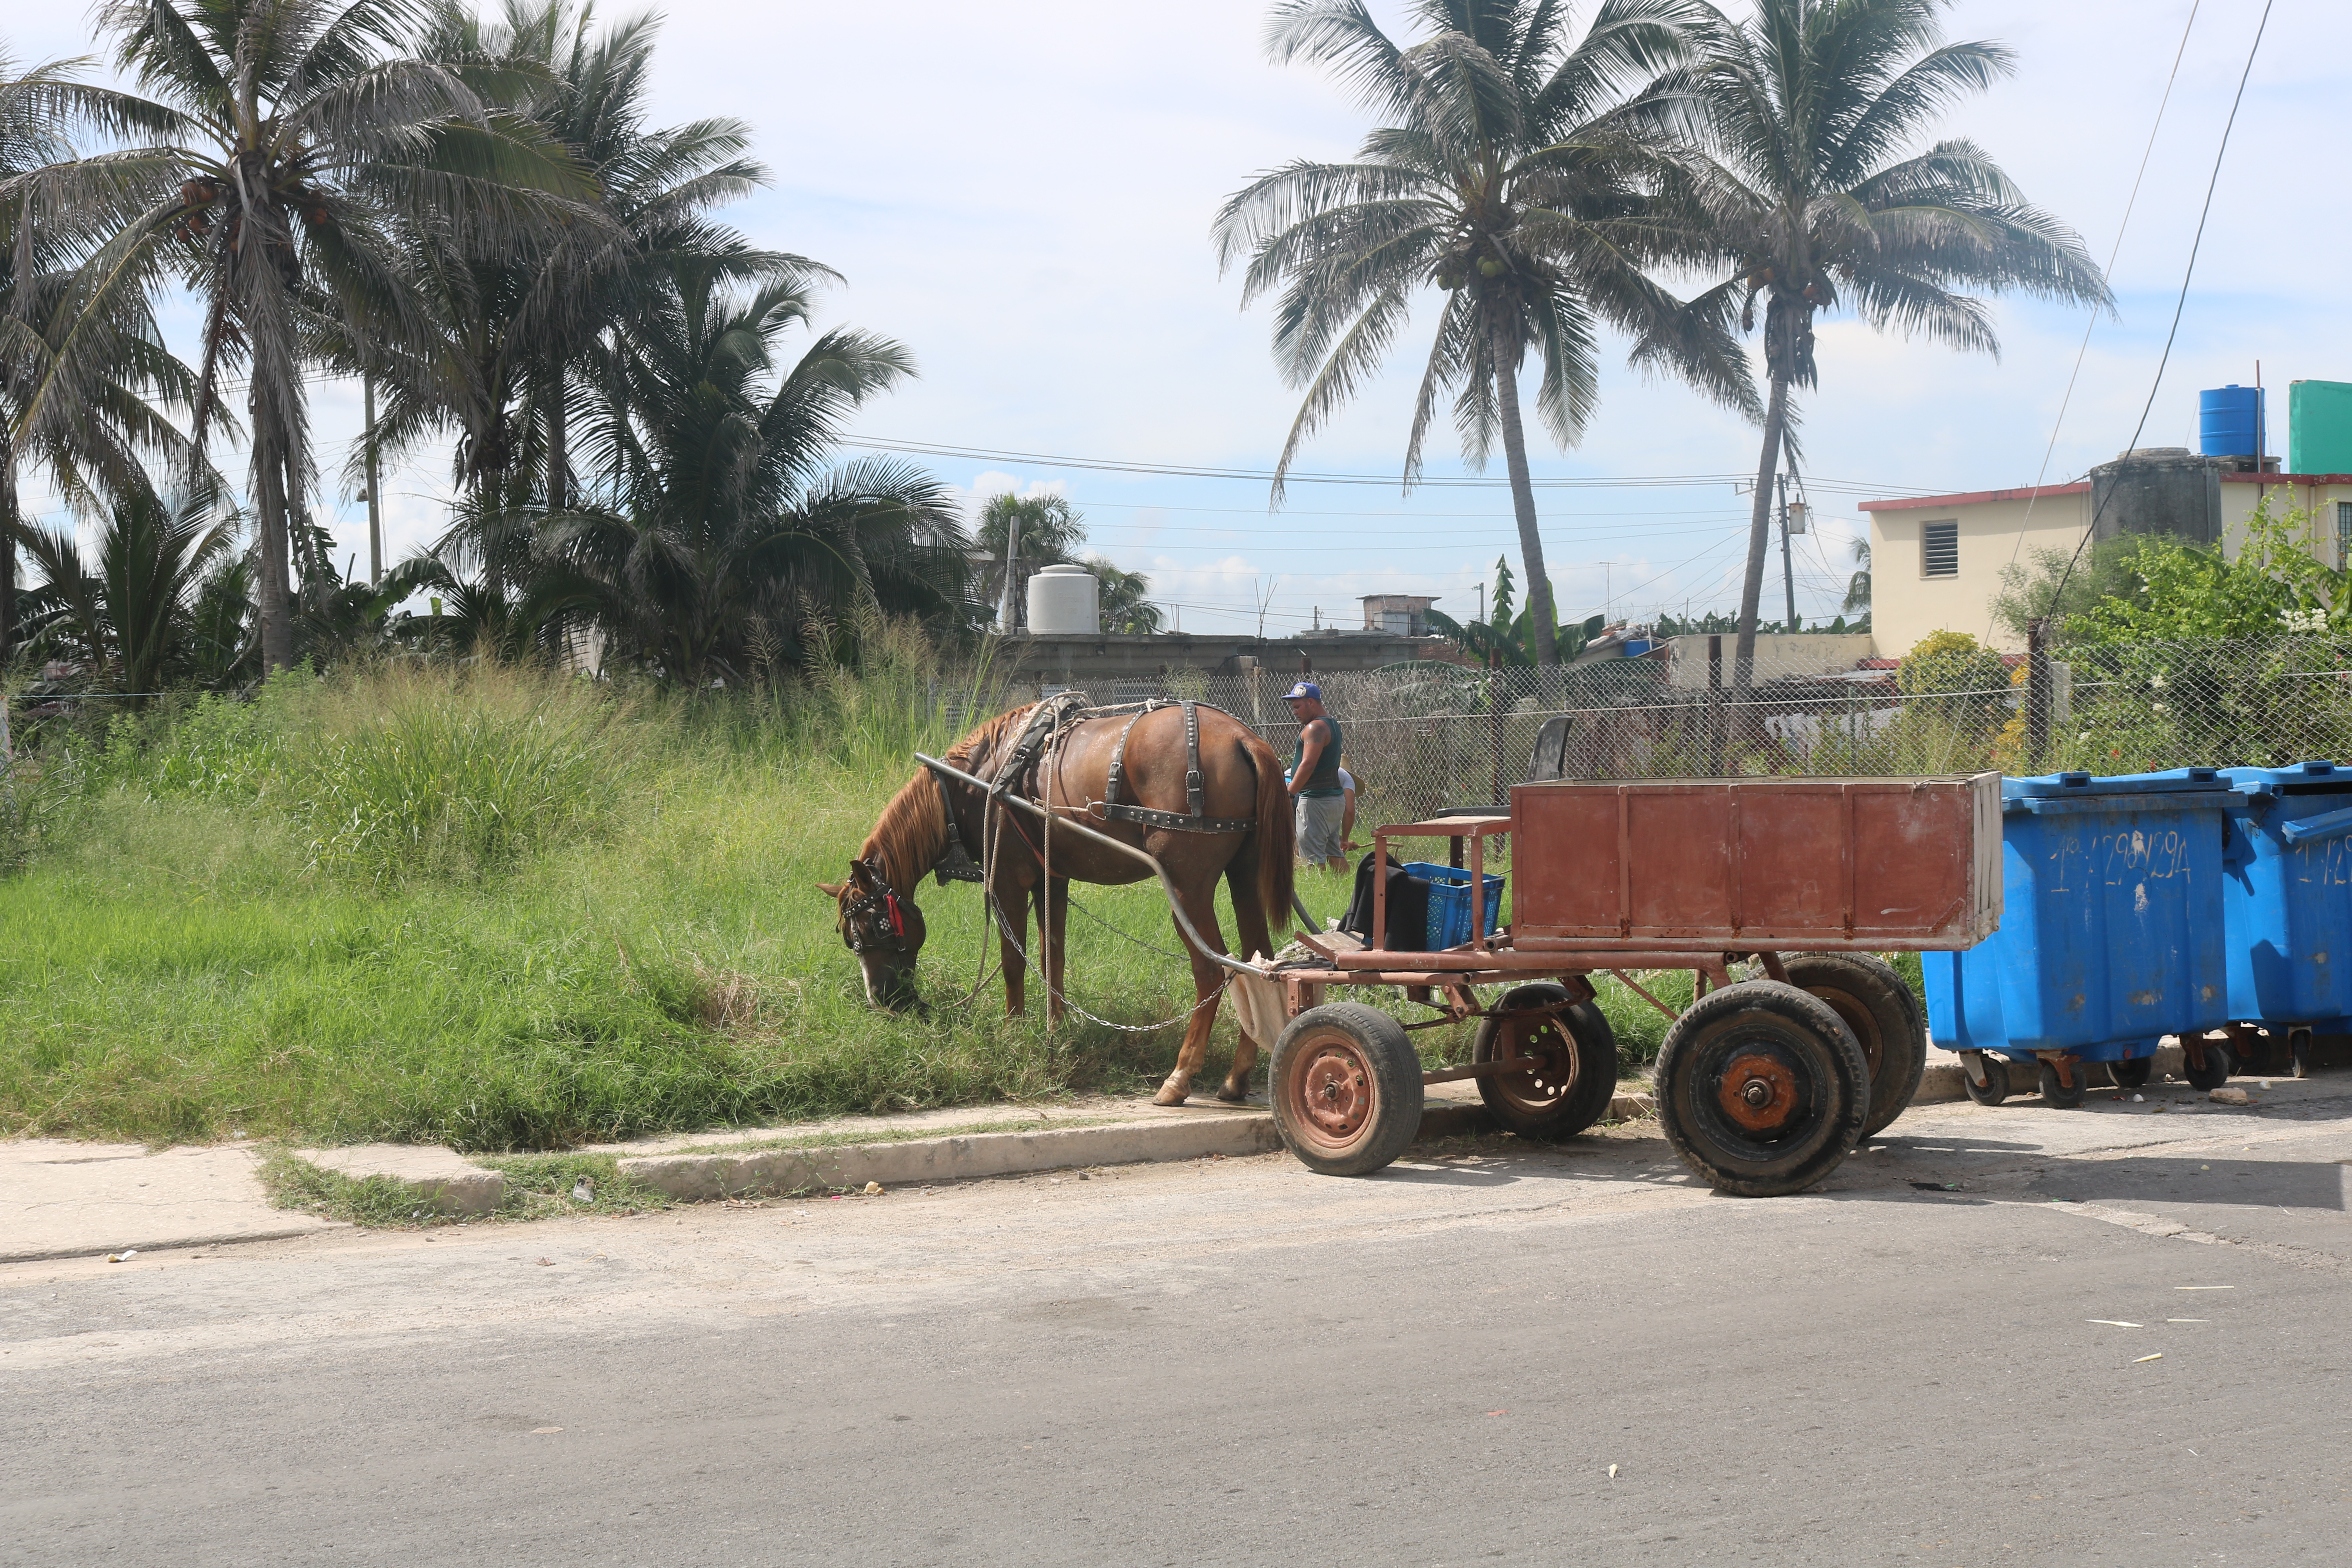 Playa-Santa-Fe-Cuba-Horse